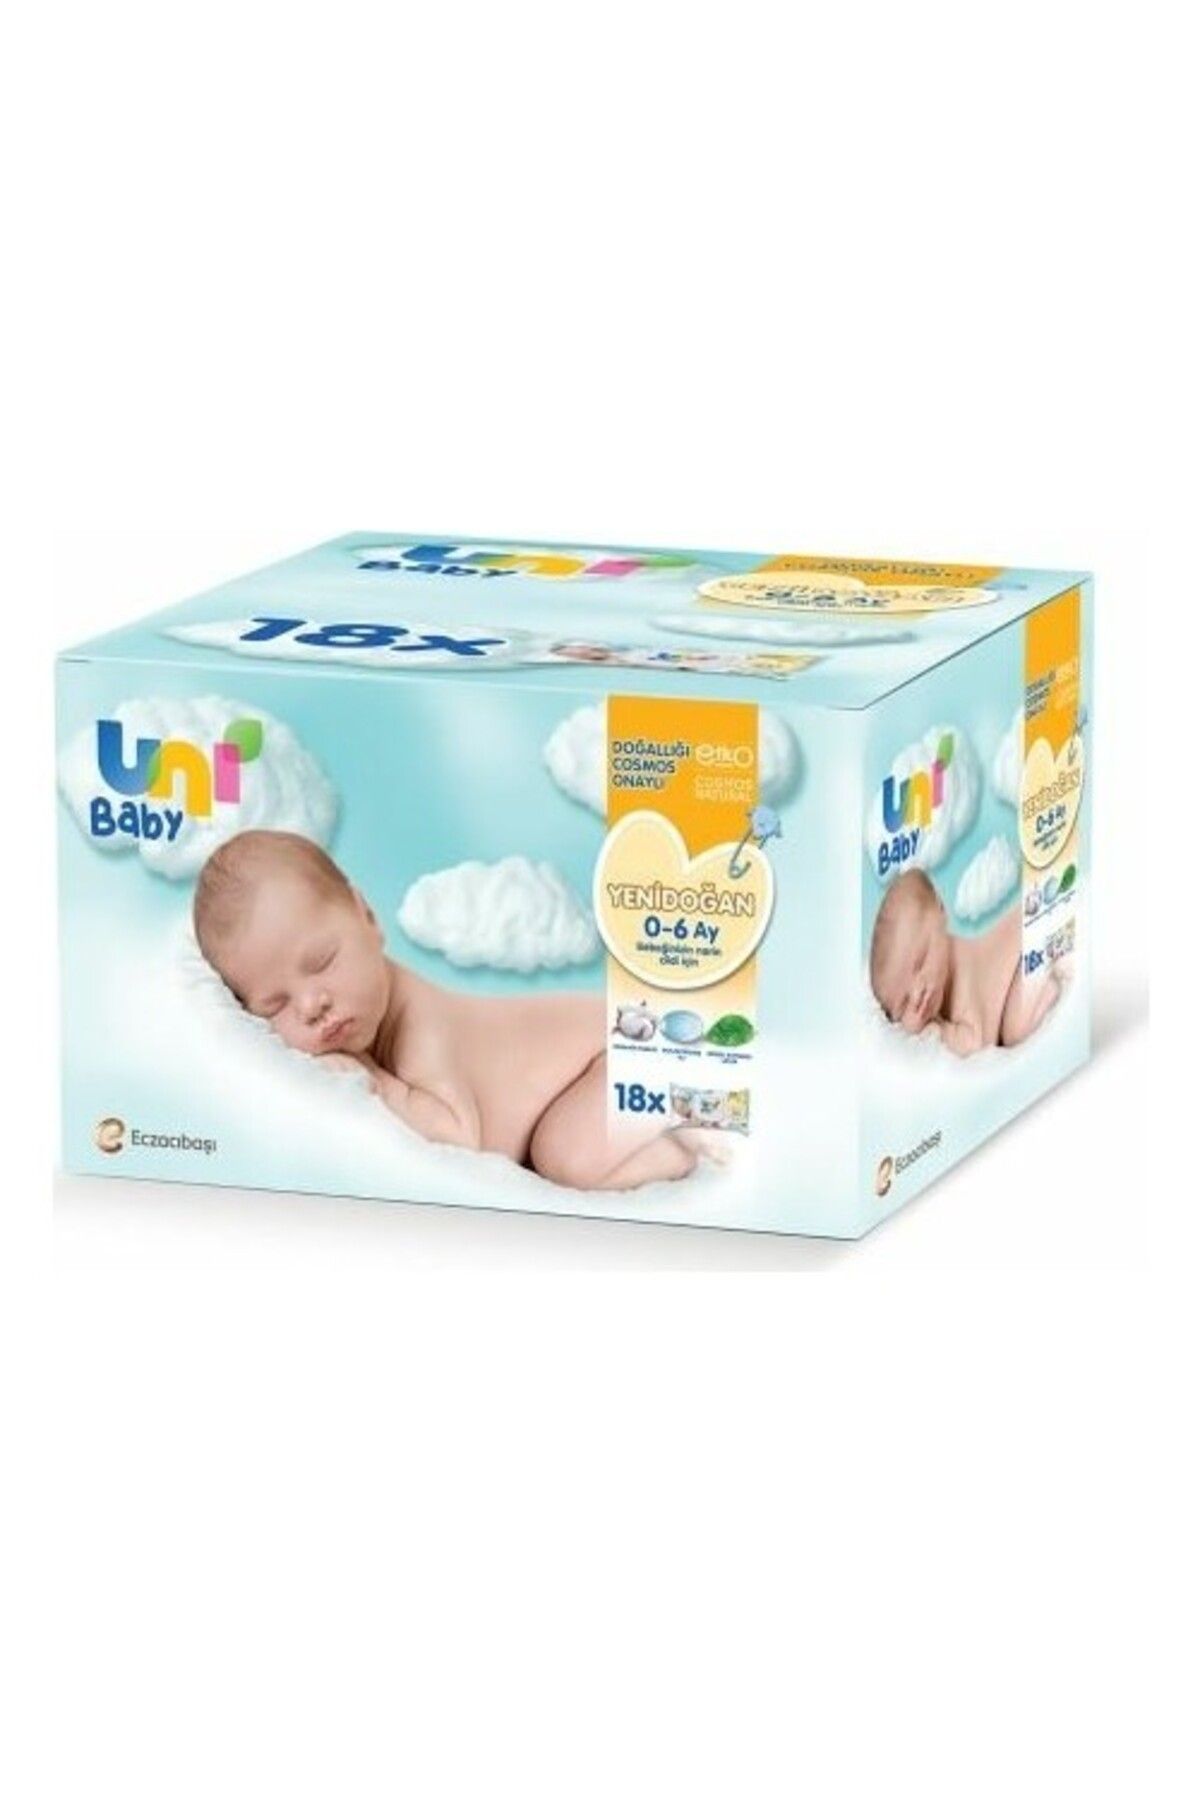 Uni Baby Yenidoğan Islak Pamuk Mendil 40 Lı X 18 Adet ( 720 Yaprak )